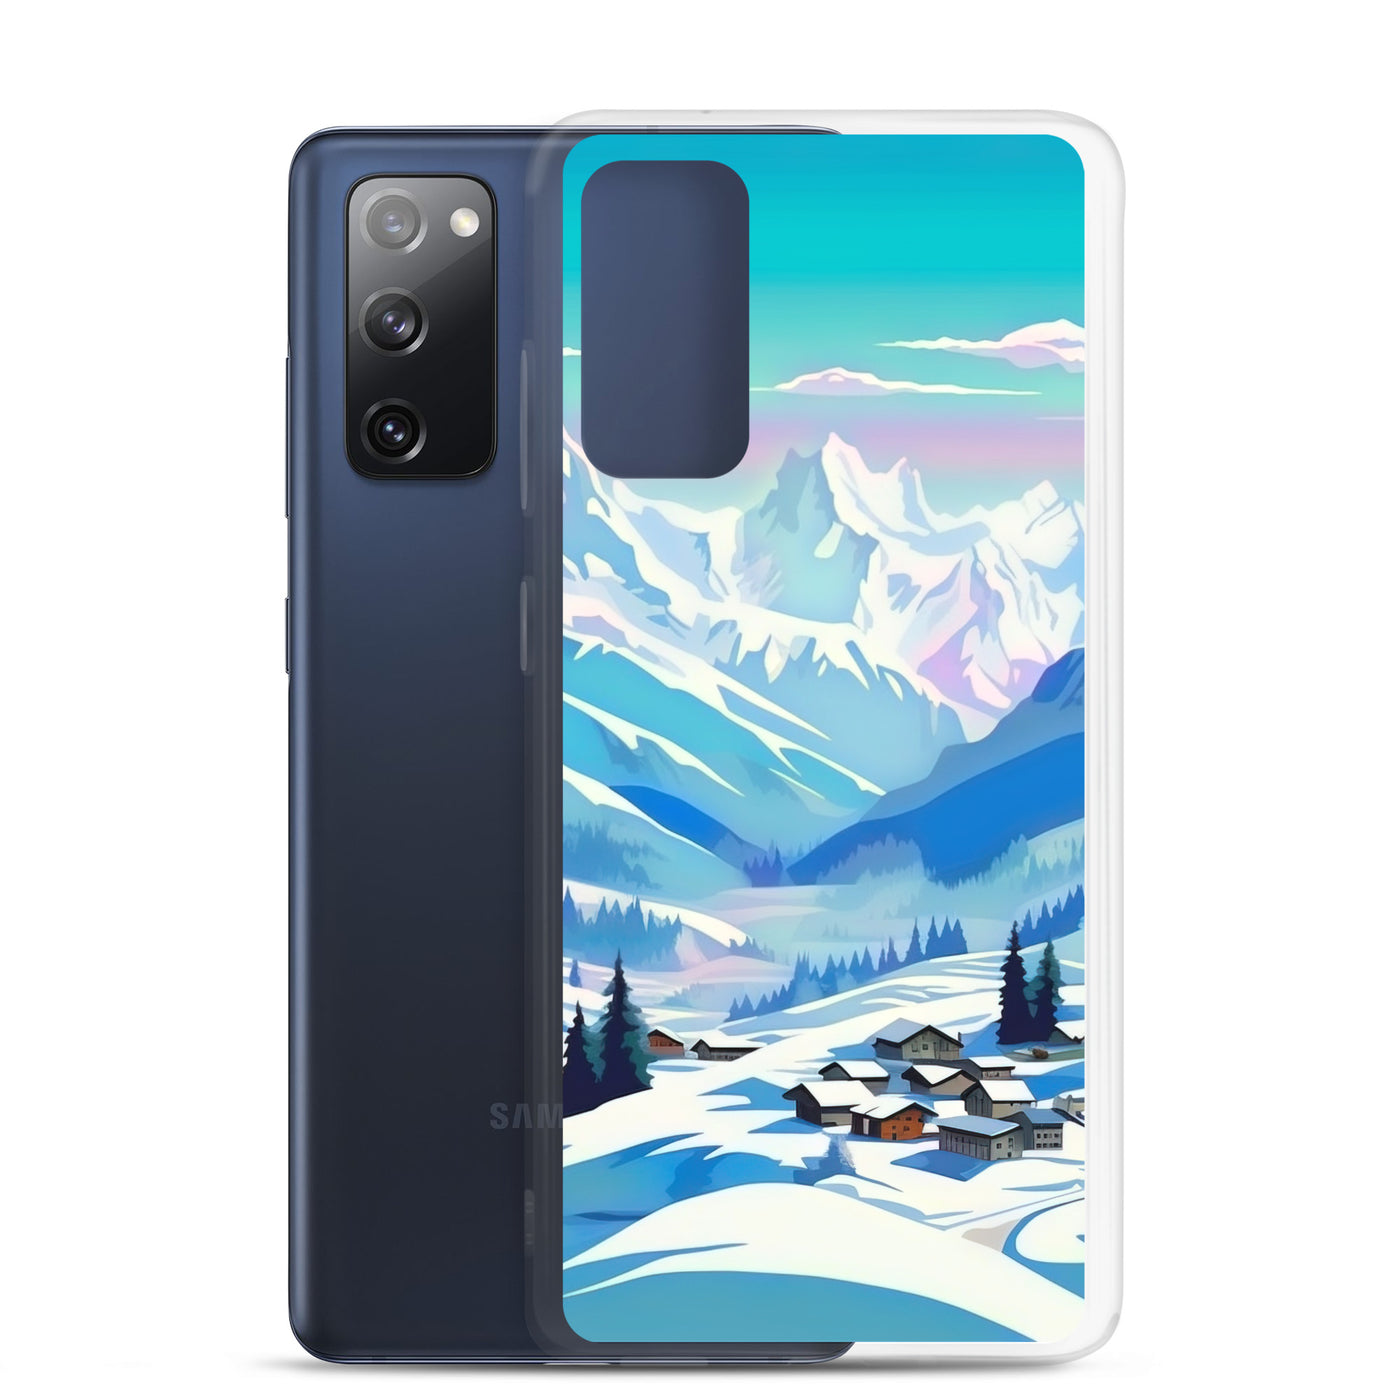 Berge und Schnee - Landschaft - Samsung Schutzhülle (durchsichtig) ski xxx